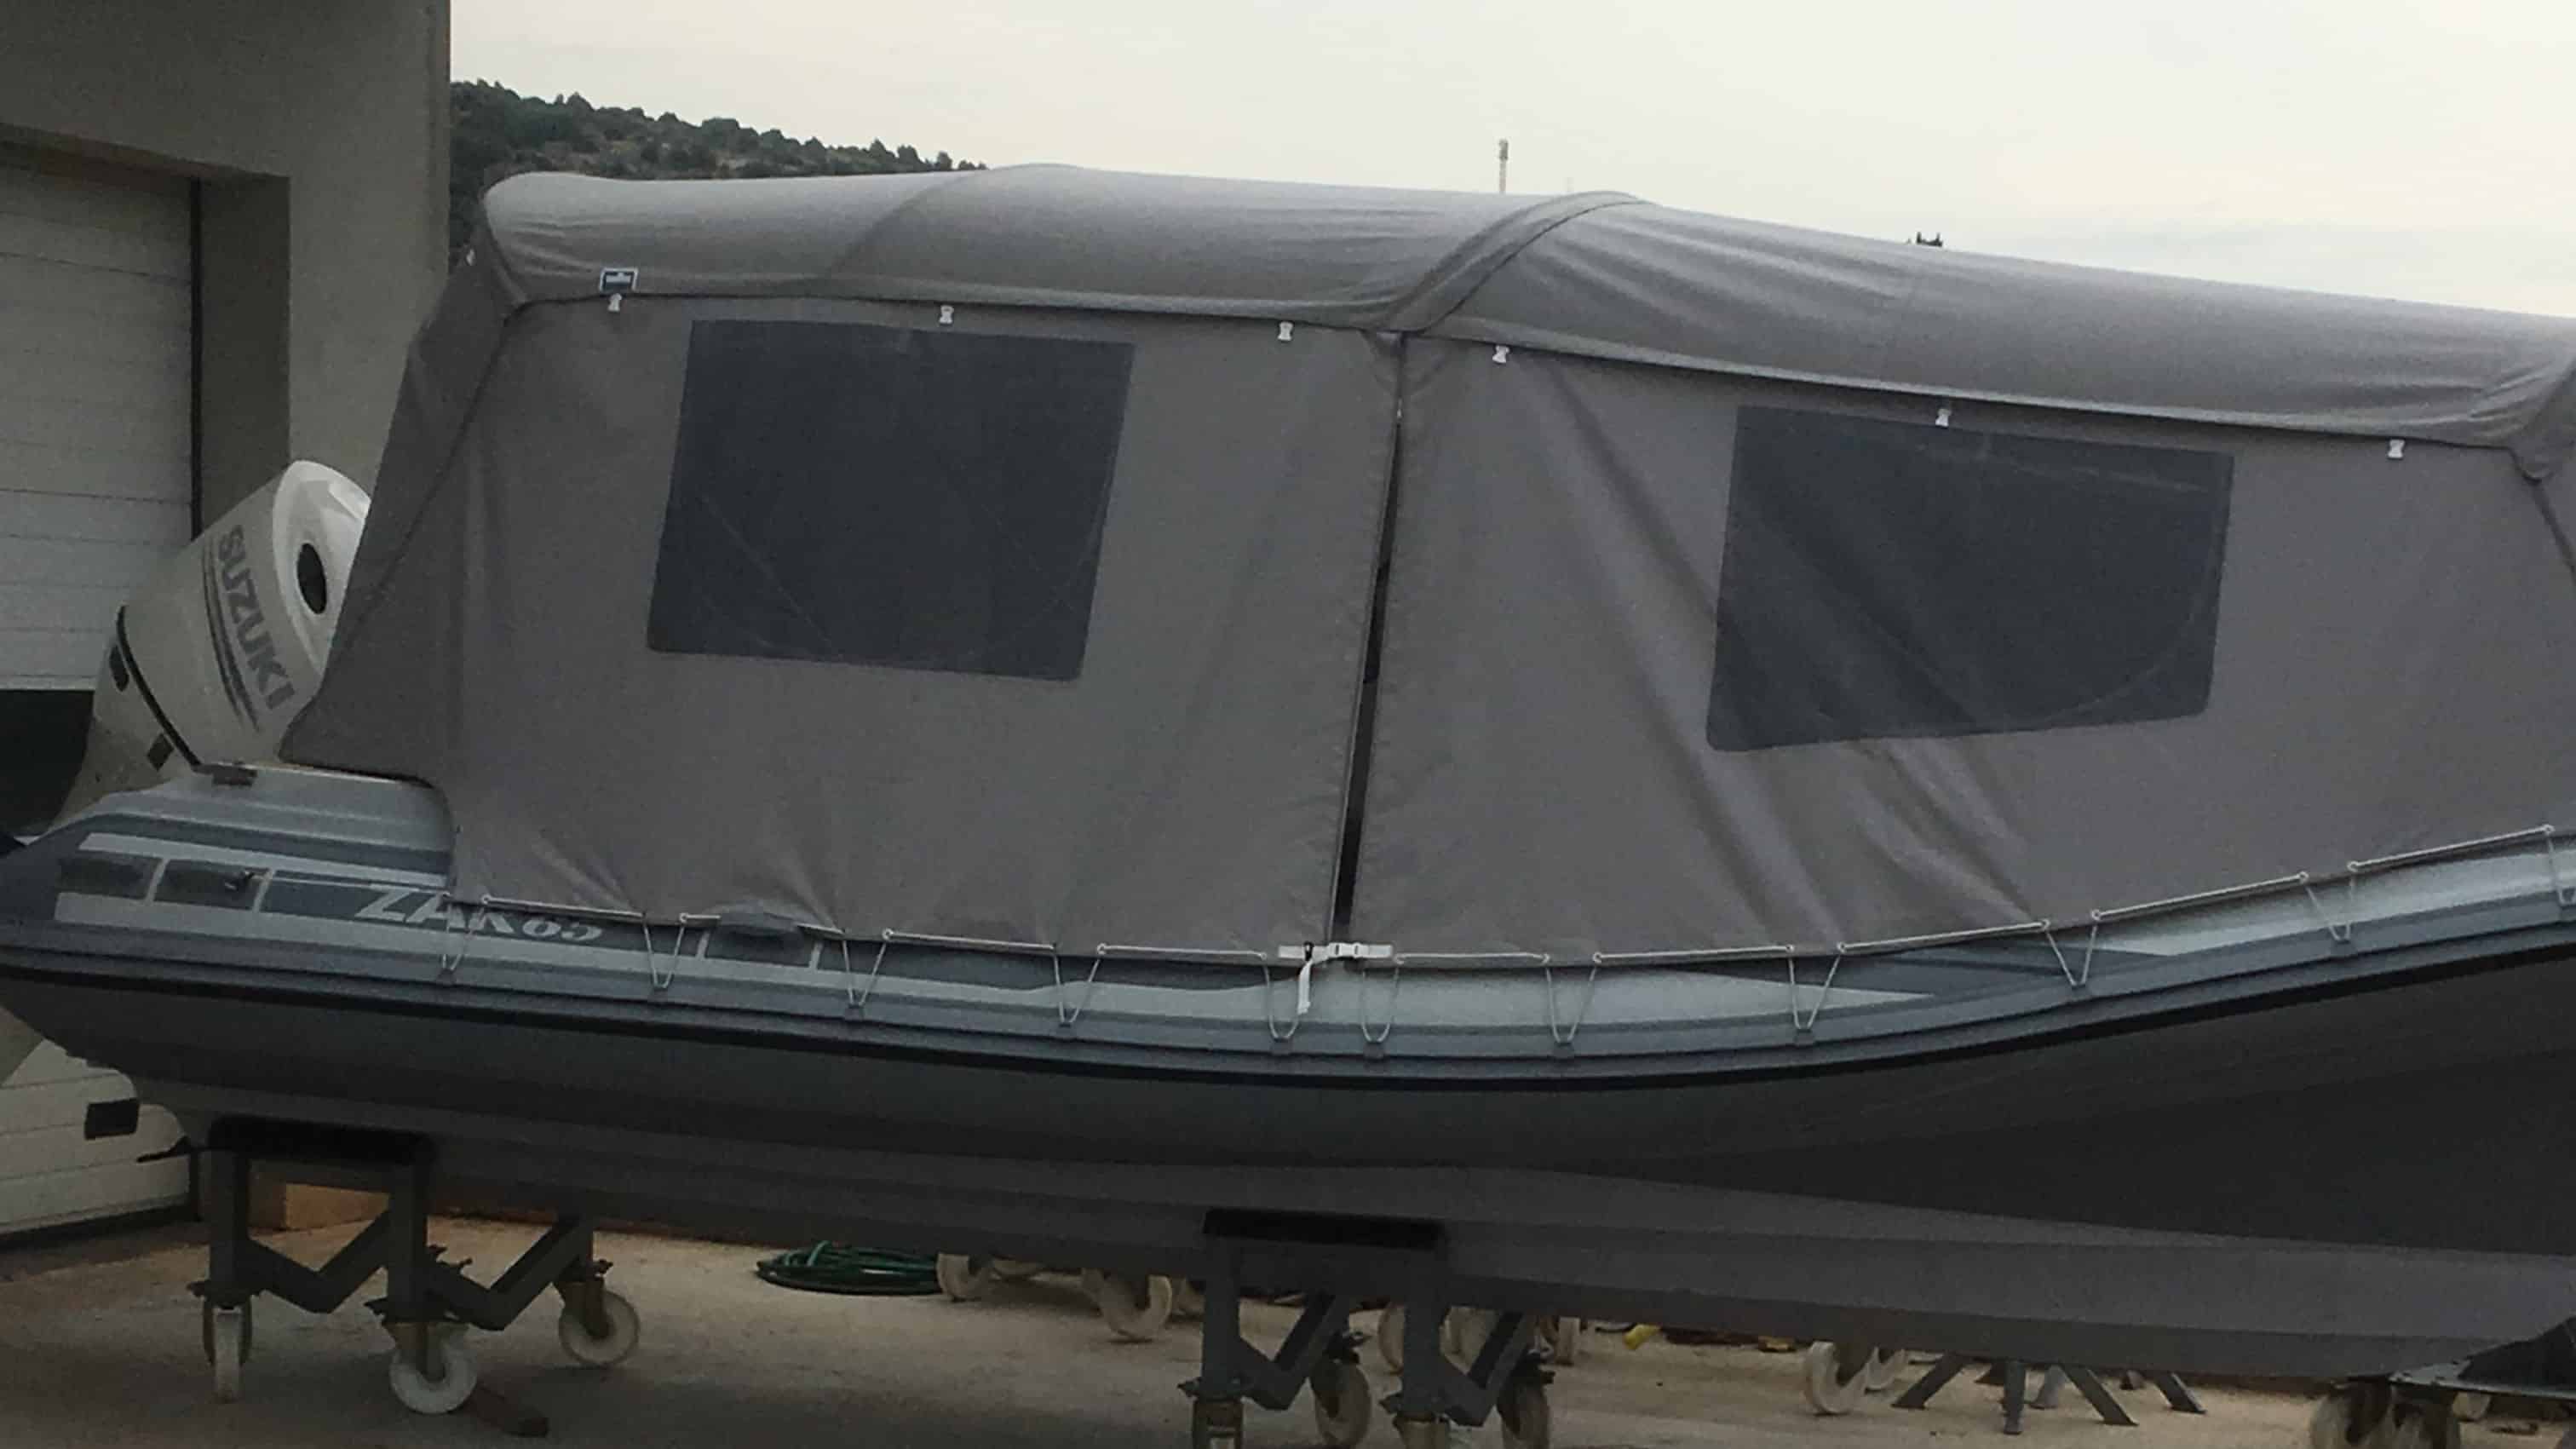 šator tenda u materijalu Sunbrella Surlast s PVC prozorima koji imaju mogućnost rolanja te integriranim komarnicima za GUMENJAK ZAR 65